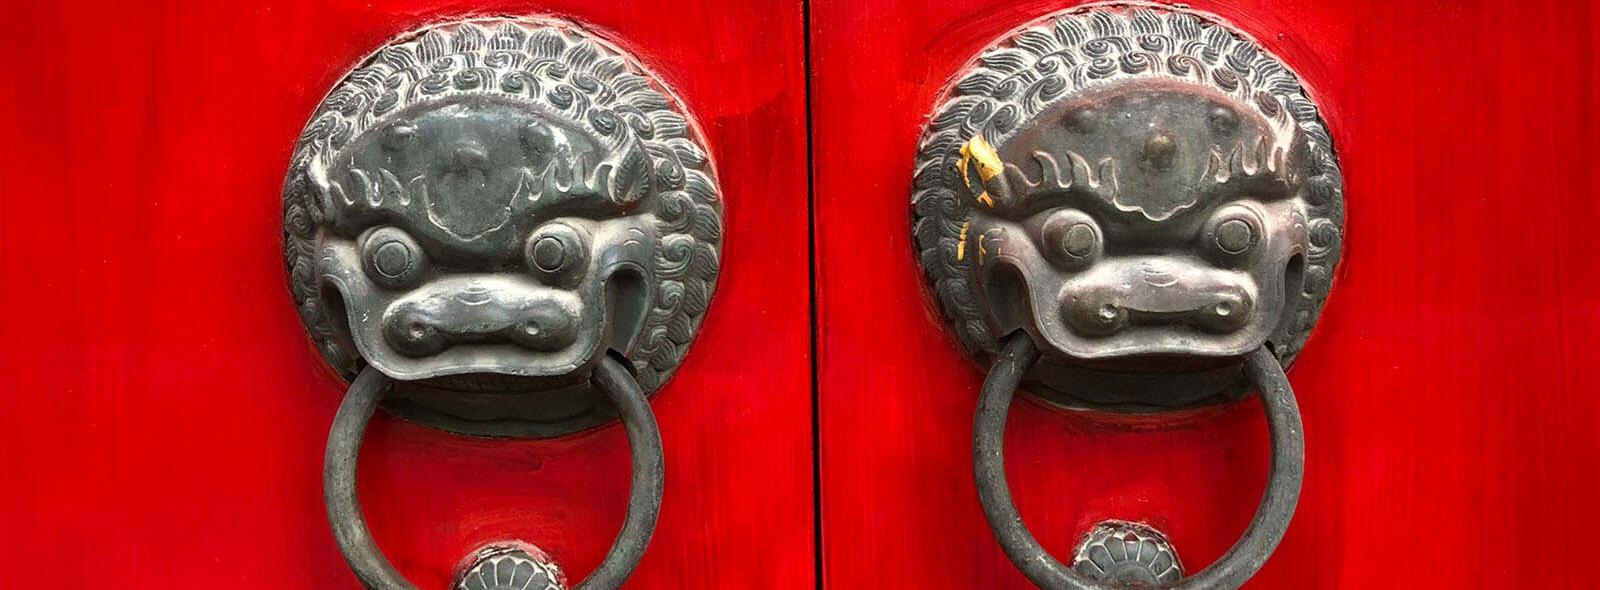 2 rode deuren met deurknoppen met leeuwenkop